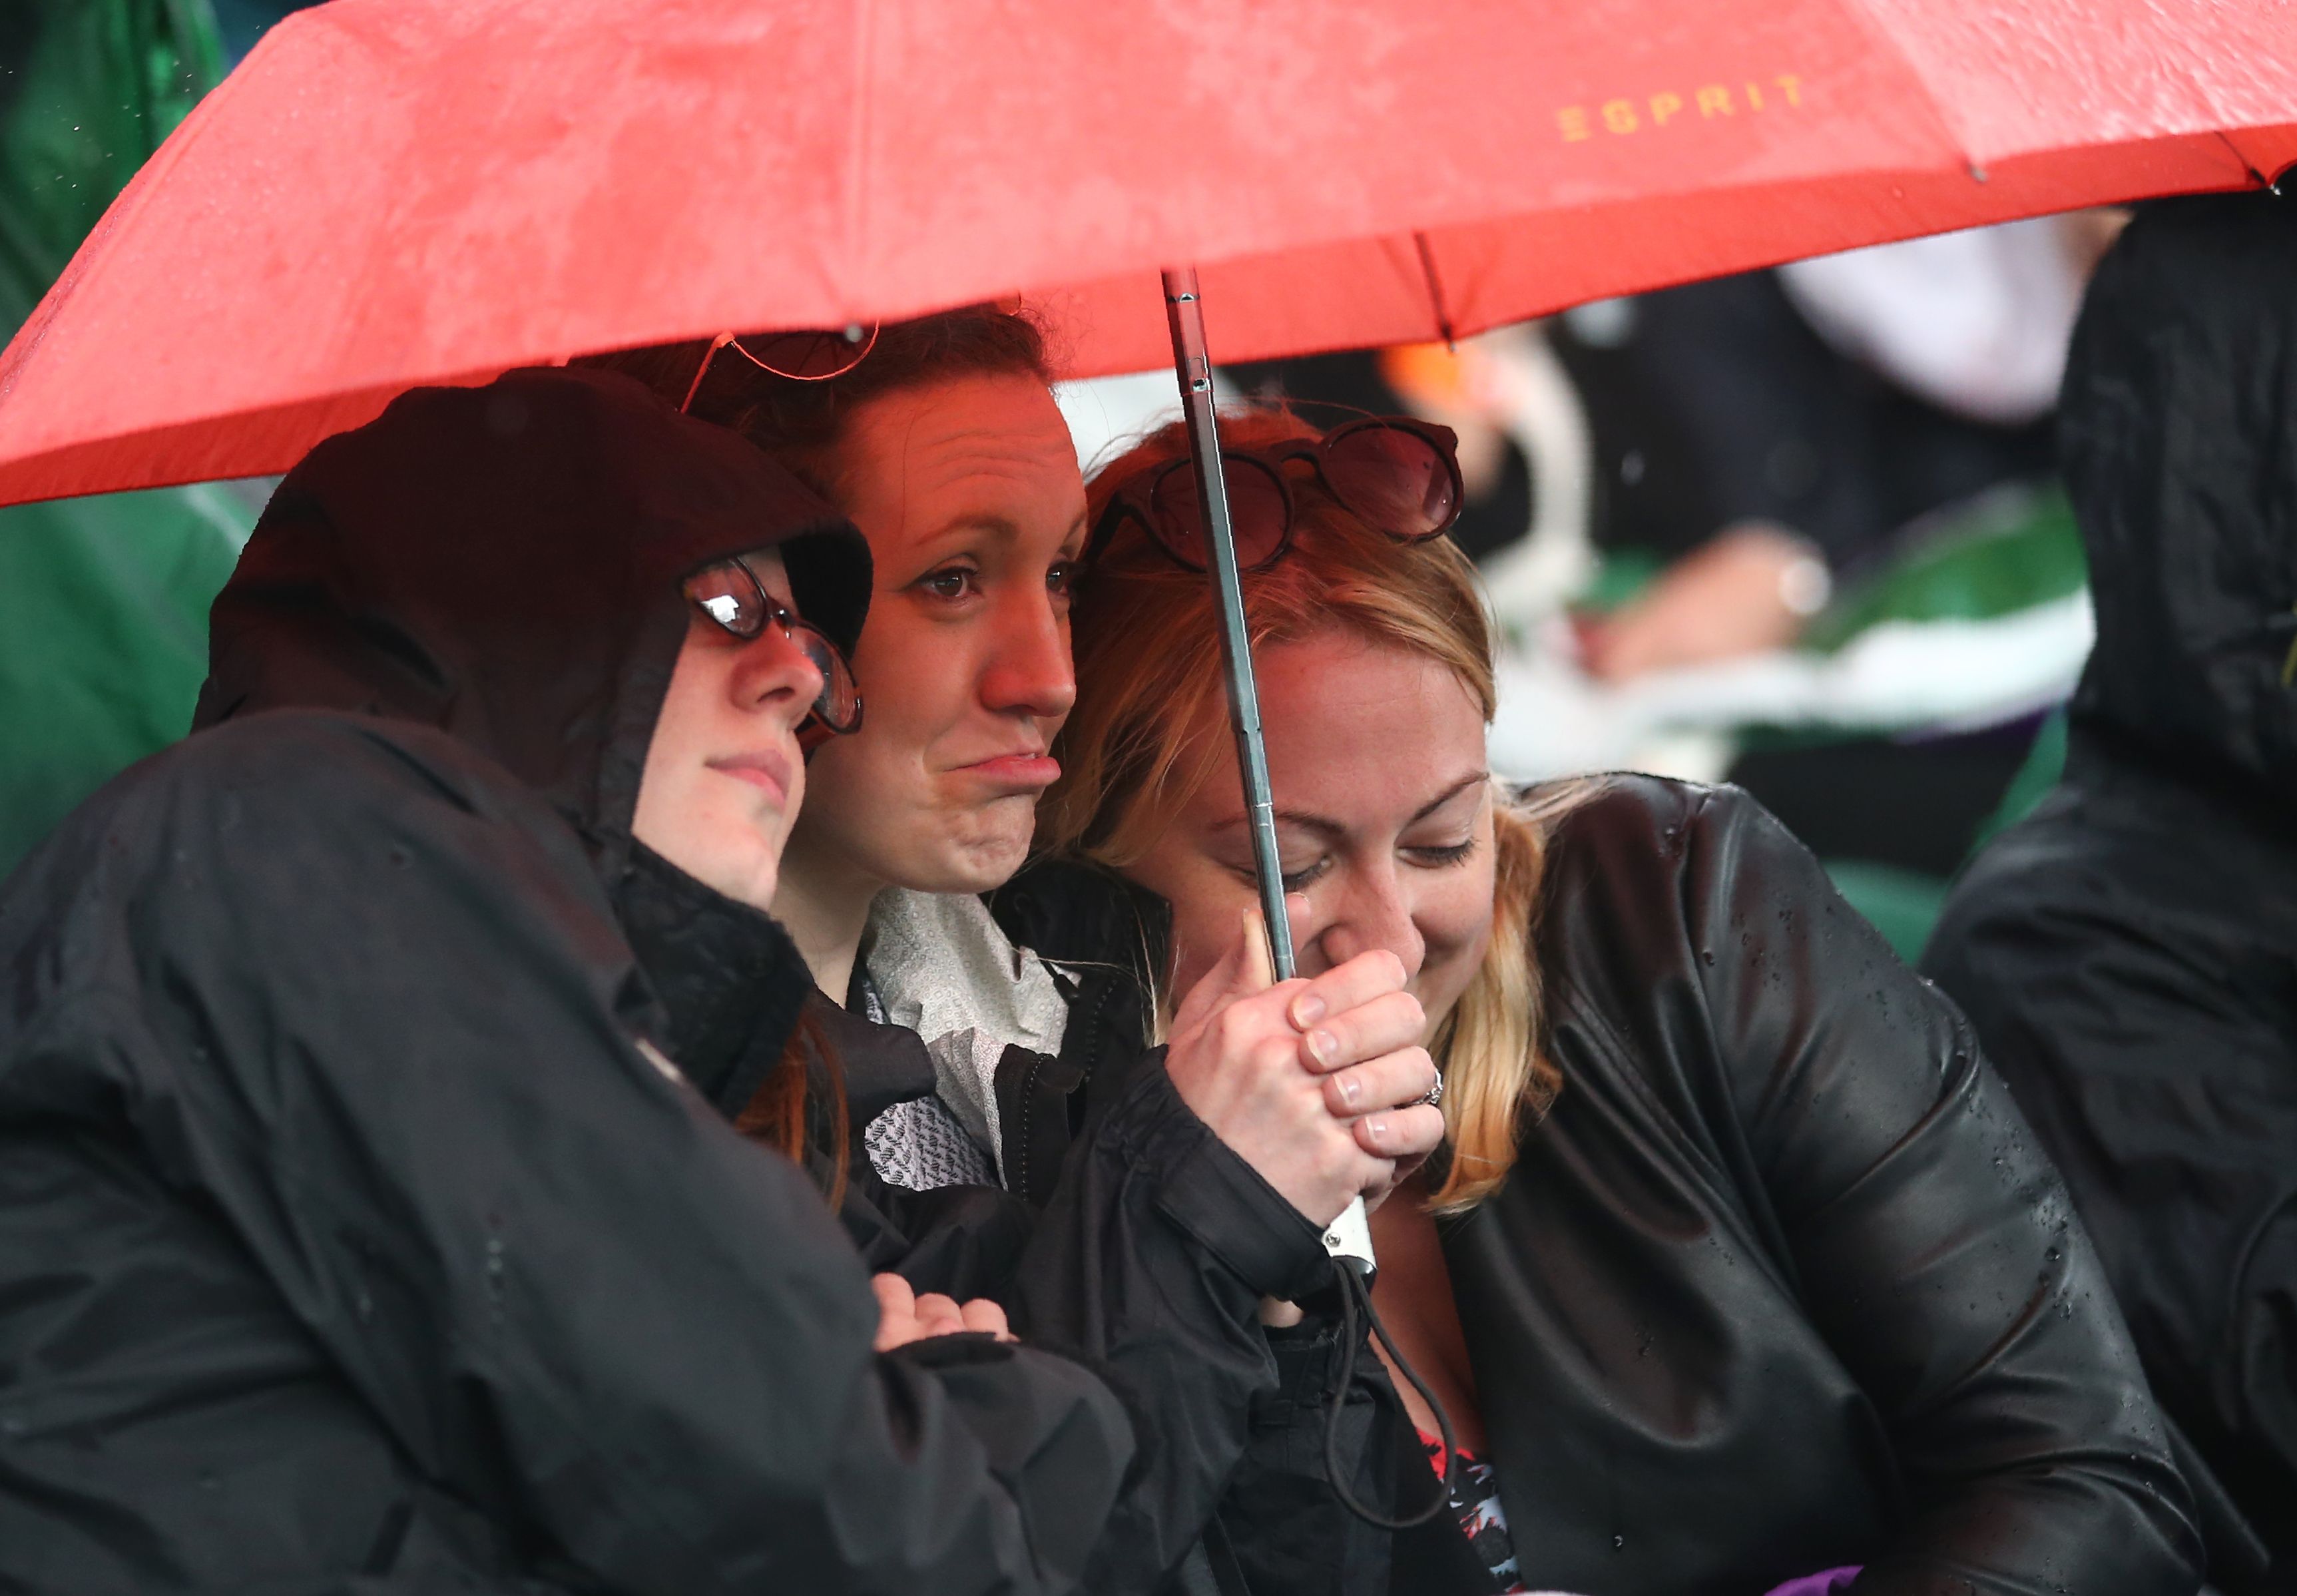 Tennis: Wimbledon confirms middle Sunday play as rain falls